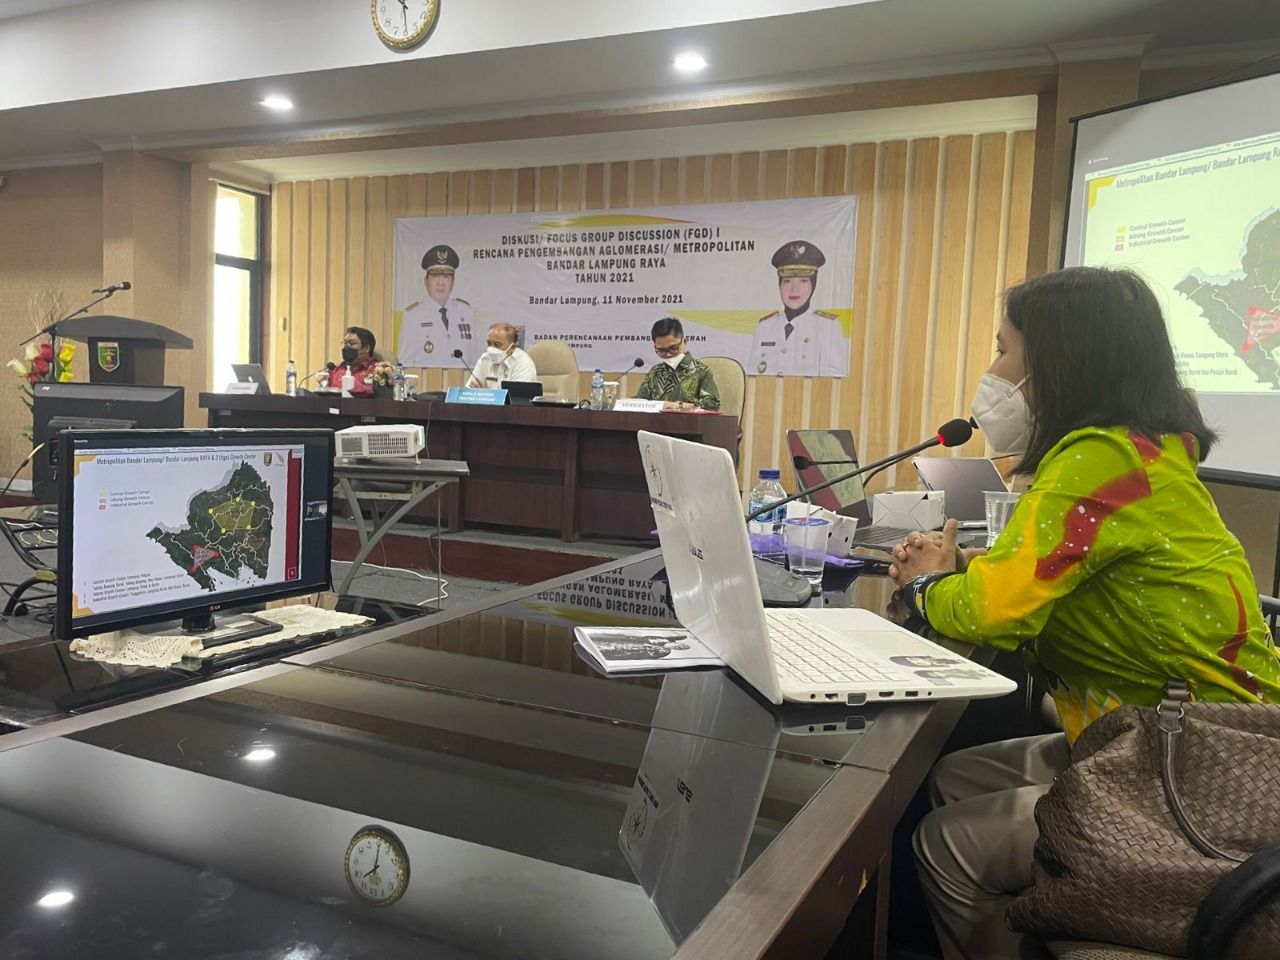 ITERA Diminta Paparkan Konsep Metropolitan Bandar Lampung Raya